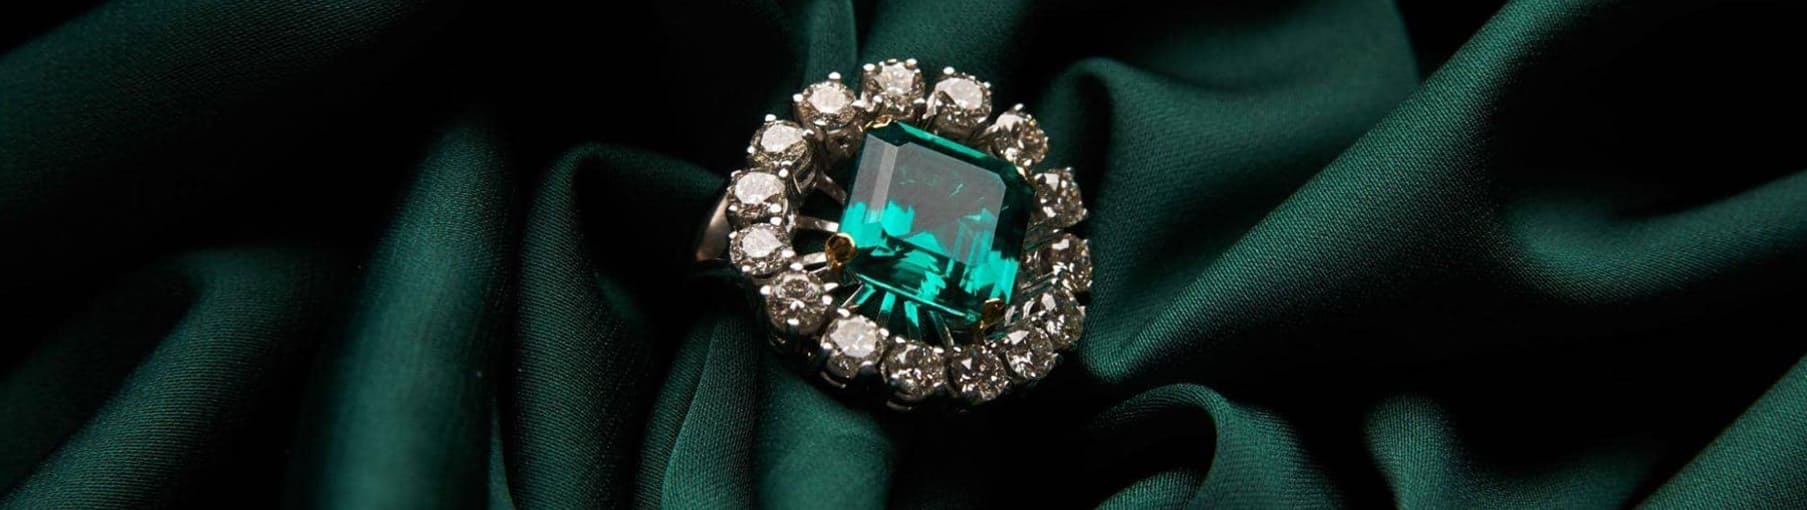 Топ зеленых камней в ювелирных украшениях – натуральные драгоценные и полудрагоценные камни зеленого цвета